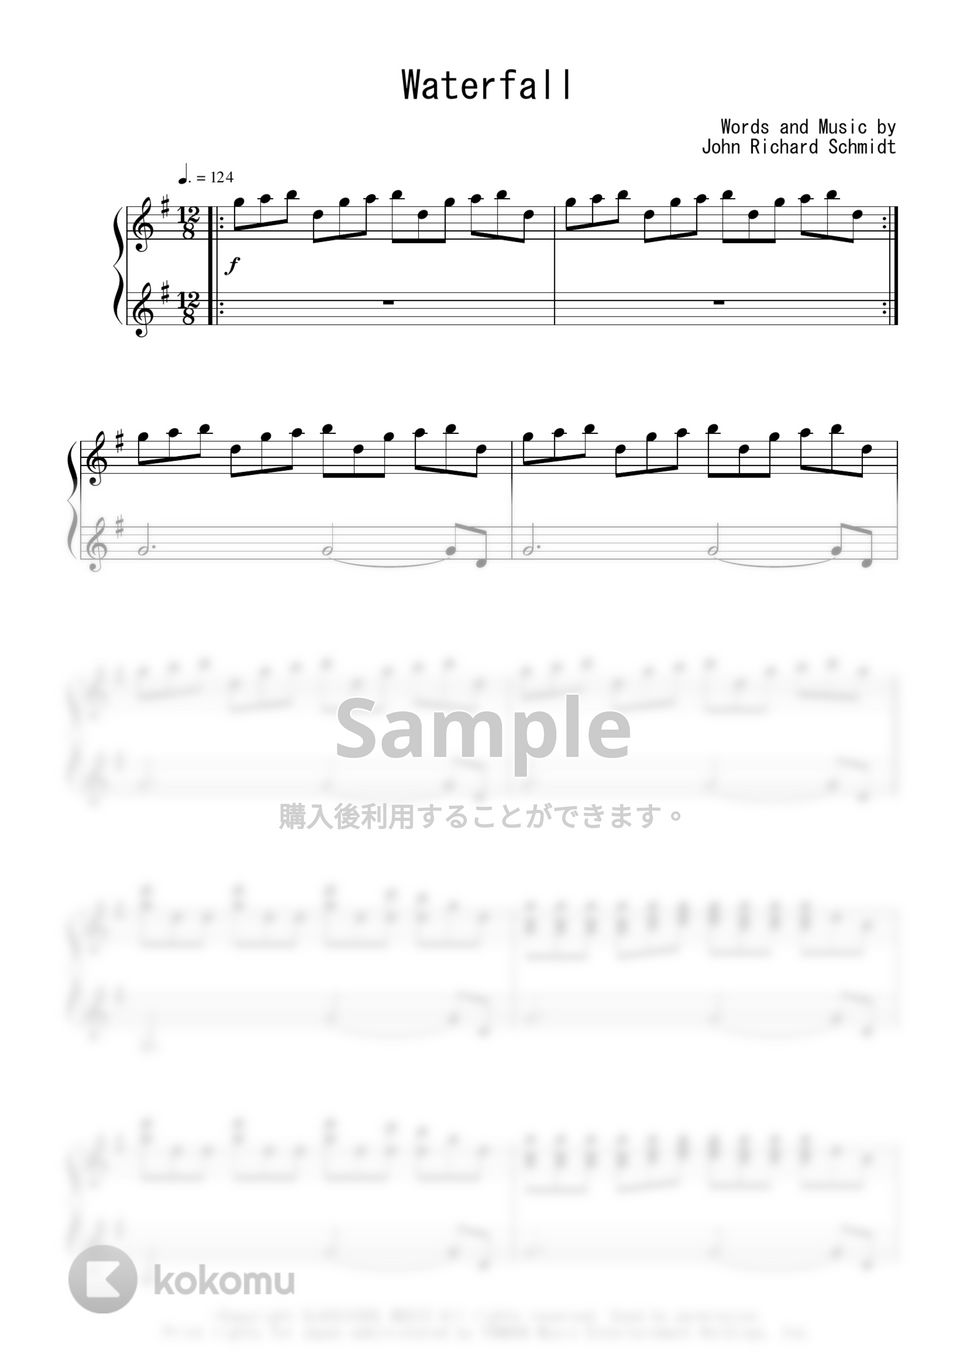 ジョン・シュミット(The Piano Guys) - Waterfall (完コピ) by Peony